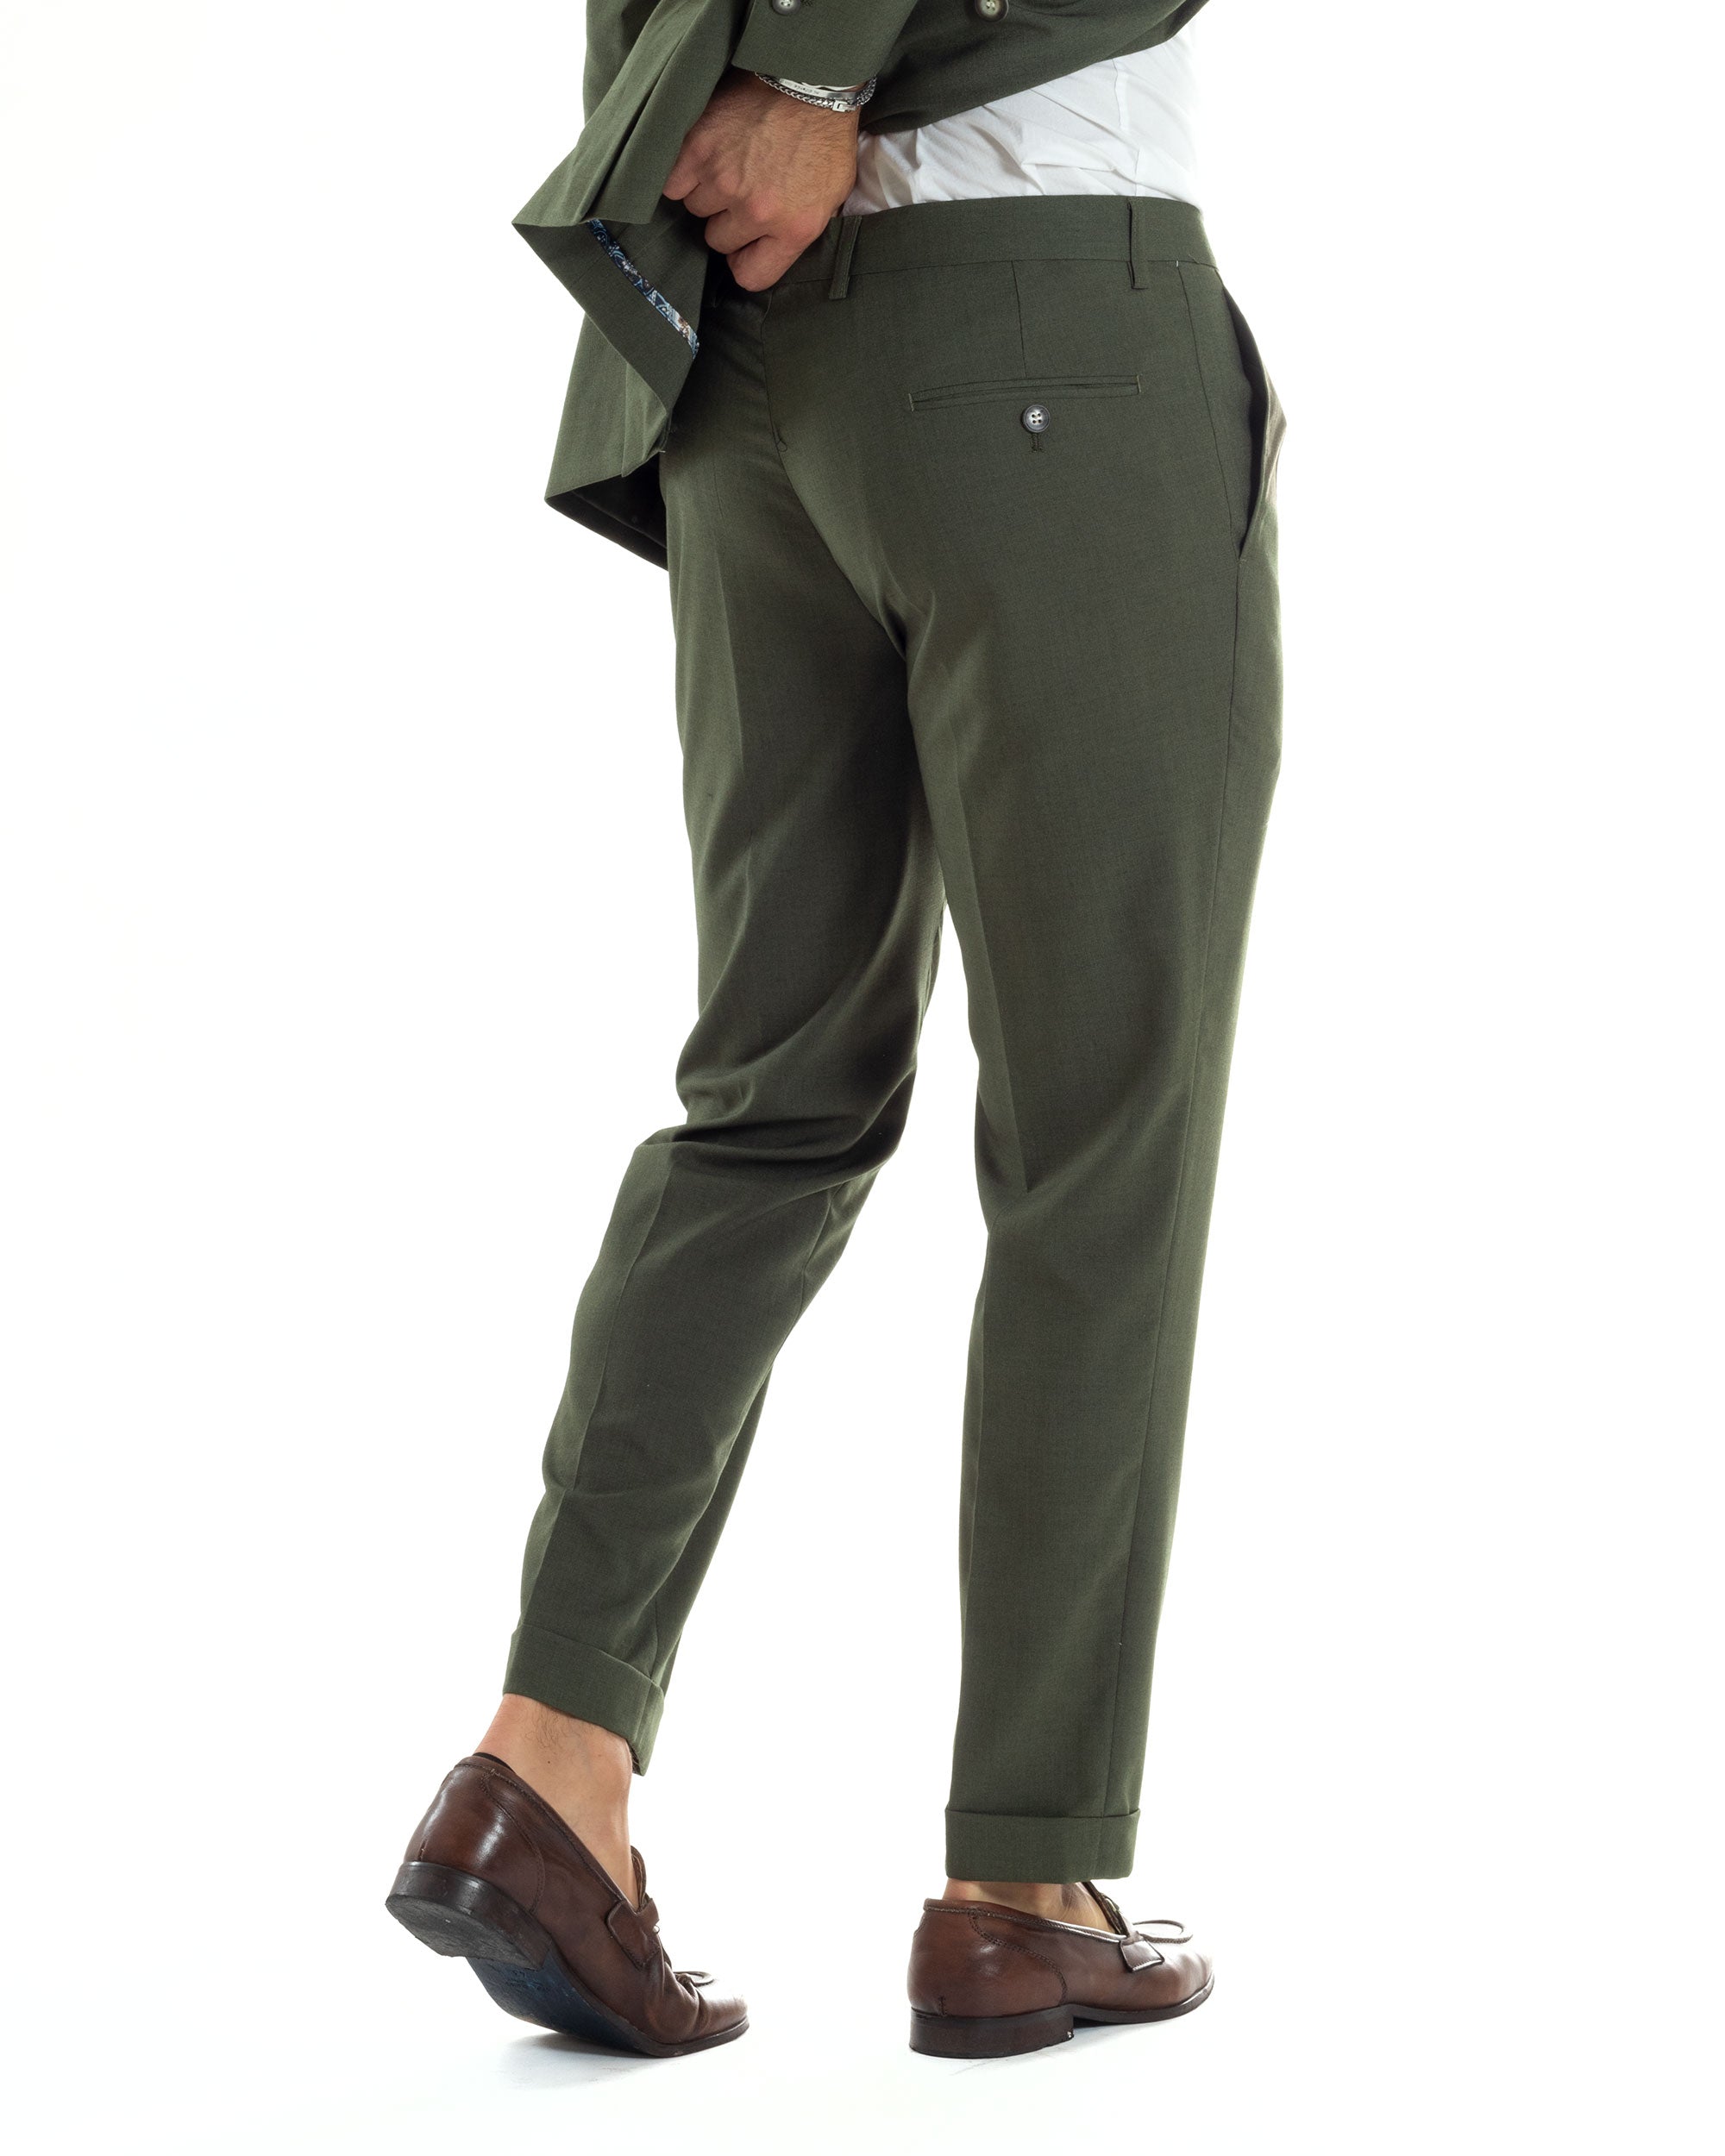 Abito Uomo Completo Sartoriale Doppiopetto Elegante Giacca Pantaloni Casual Tinta Unita Verde GIOSAL-AE1068A